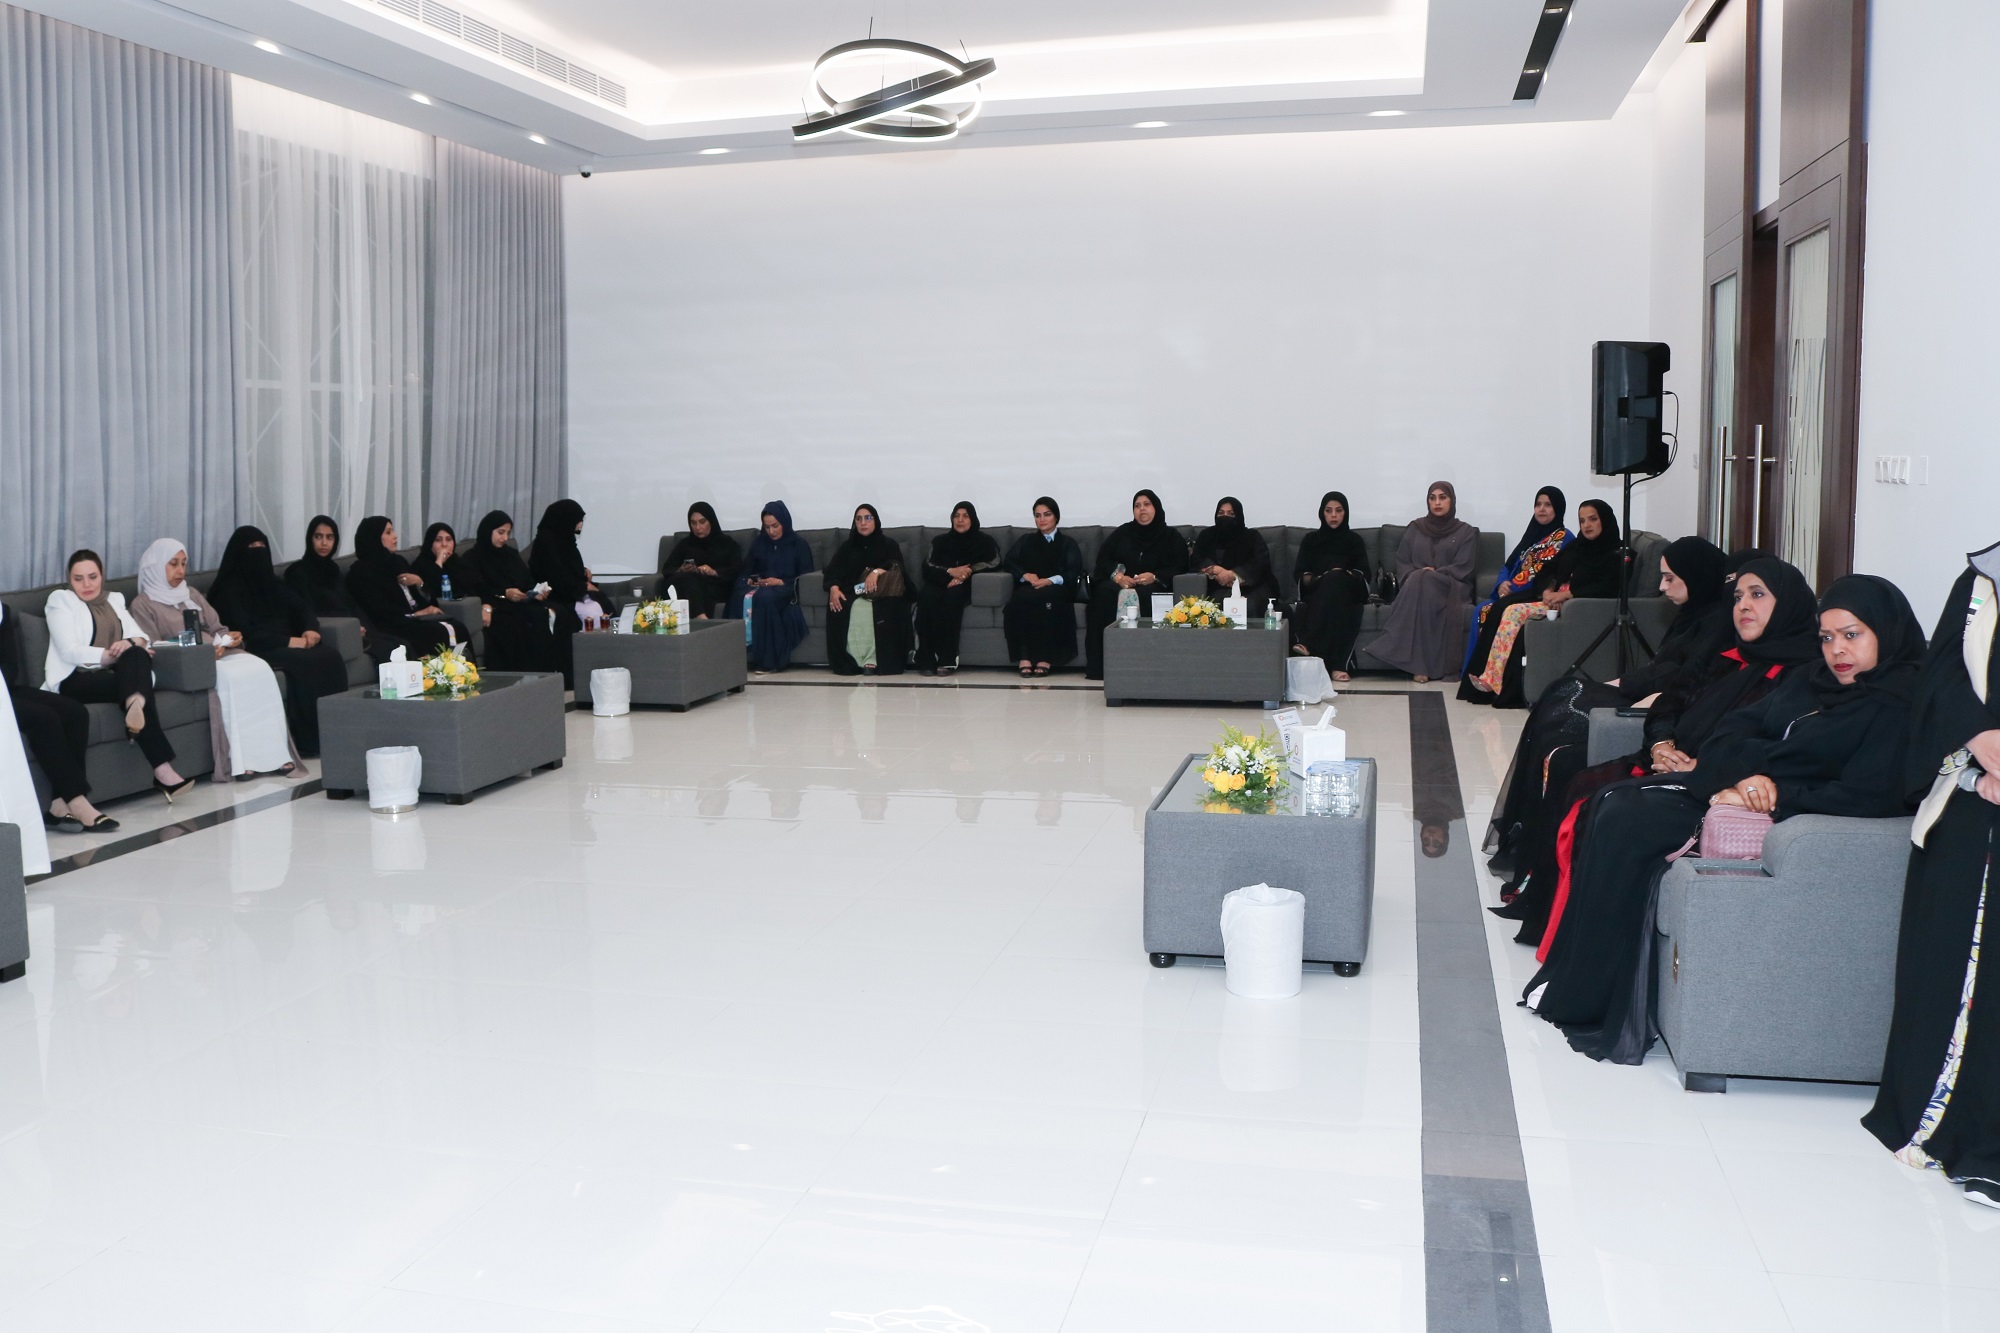 مجلس سيدات اعمال عجمان ينظم جلسة حوارية بعنوان "المرأة واستدامة الاعمال"